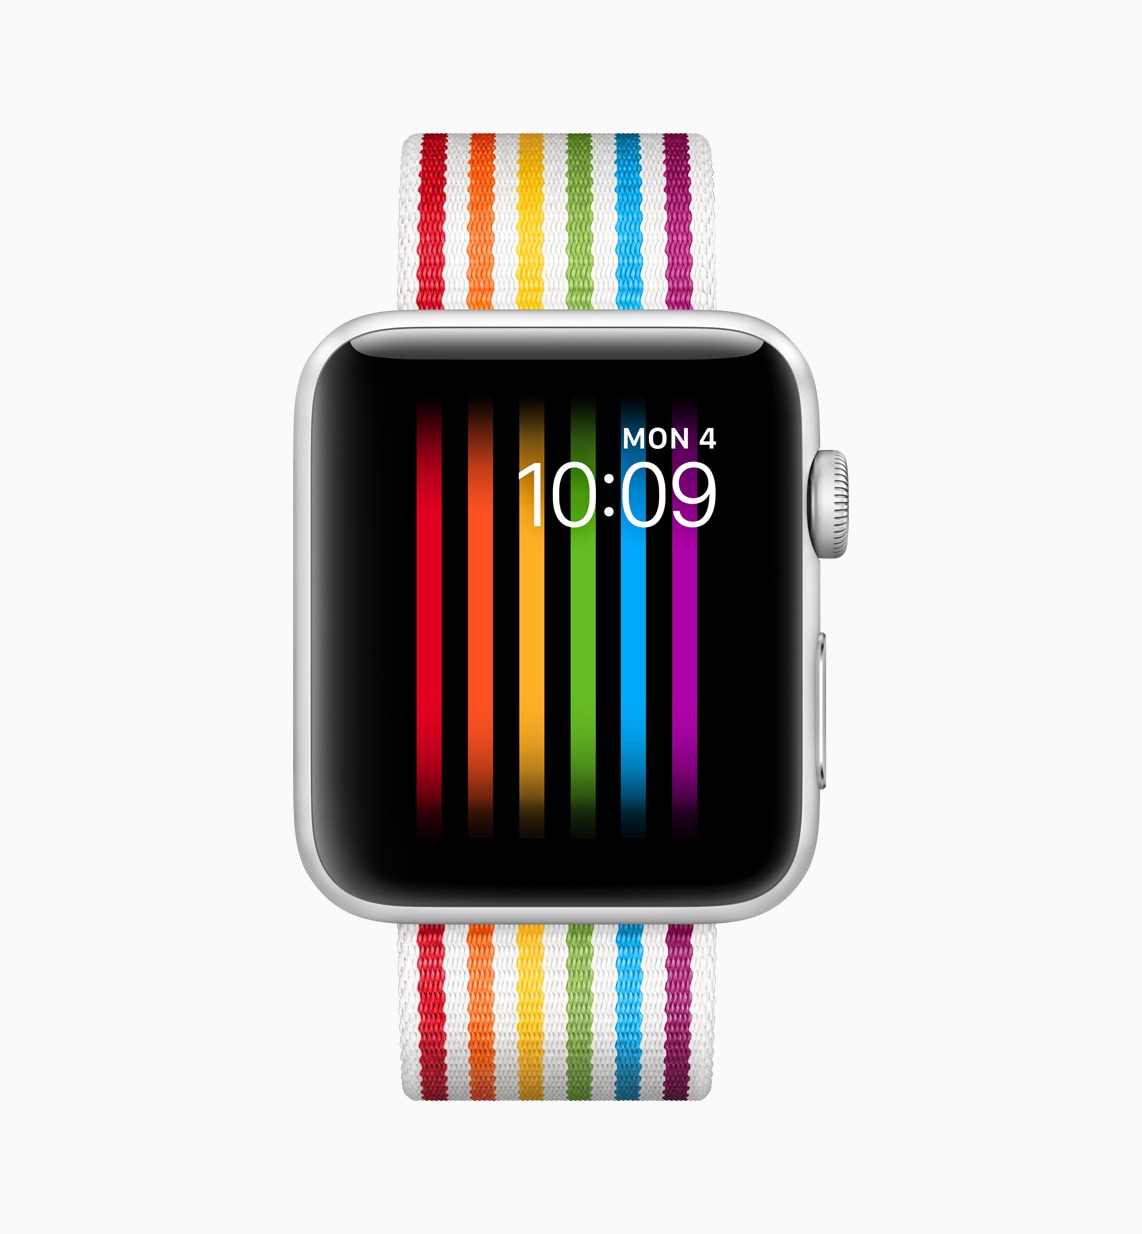 Apple blocks Watch "Pride" display in Russia